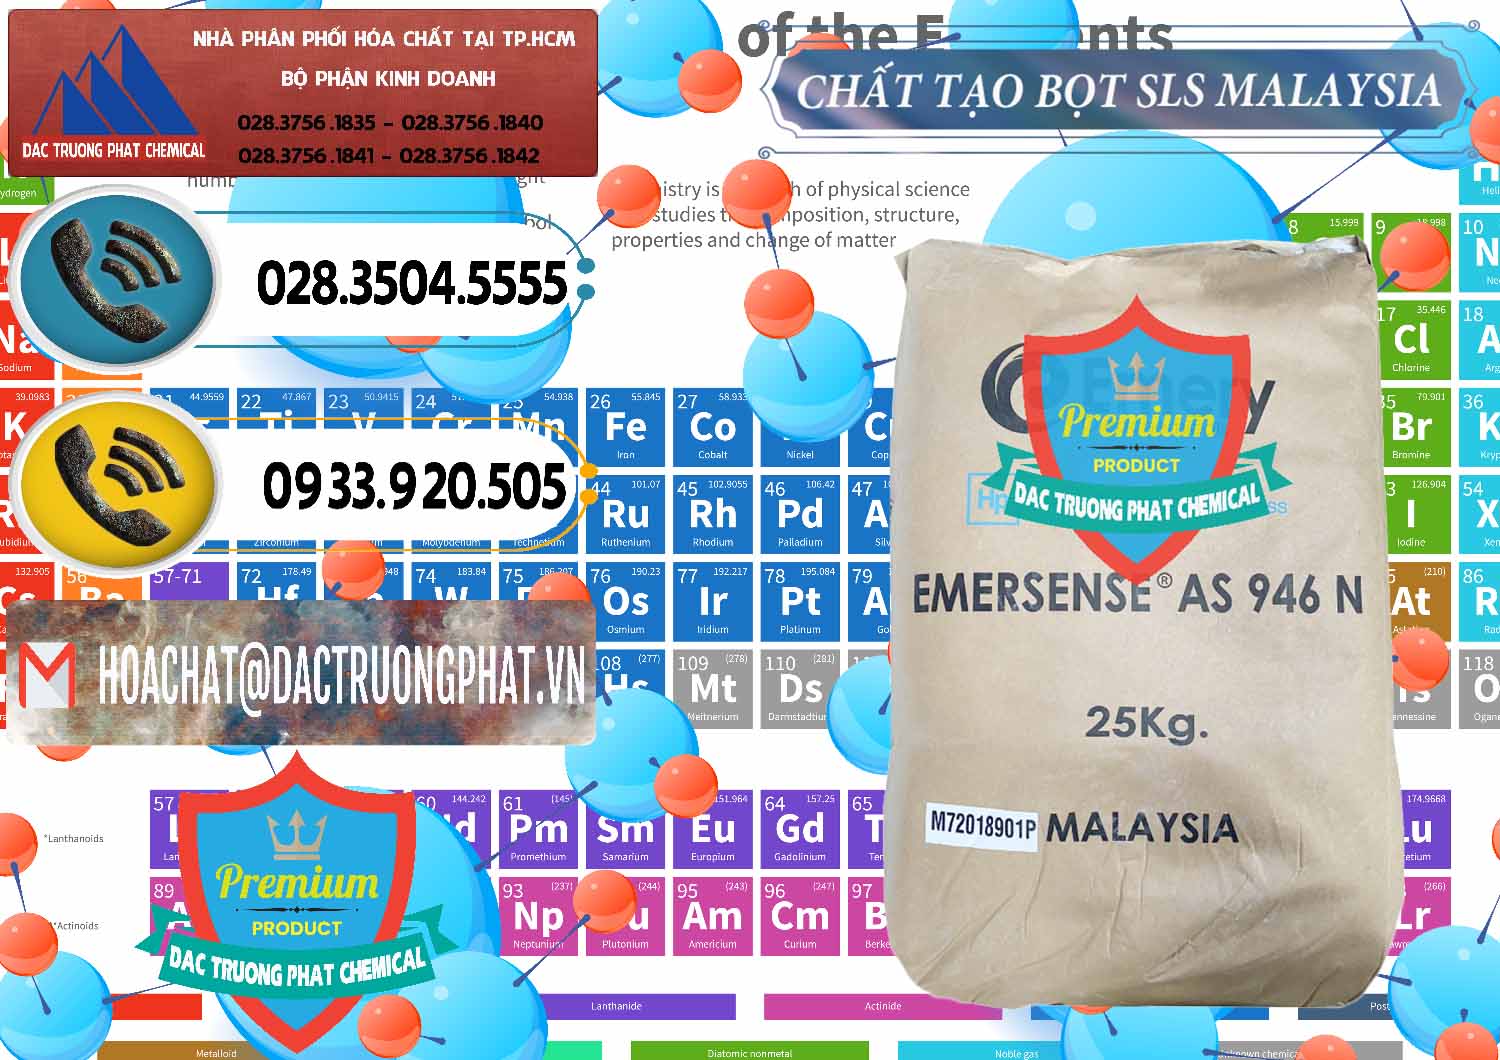 Công ty chuyên kinh doanh & bán Chất Tạo Bọt SLS Emery - Emersense AS 946N Mã Lai Malaysia - 0423 - Nhà cung cấp & nhập khẩu hóa chất tại TP.HCM - hoachatdetnhuom.vn